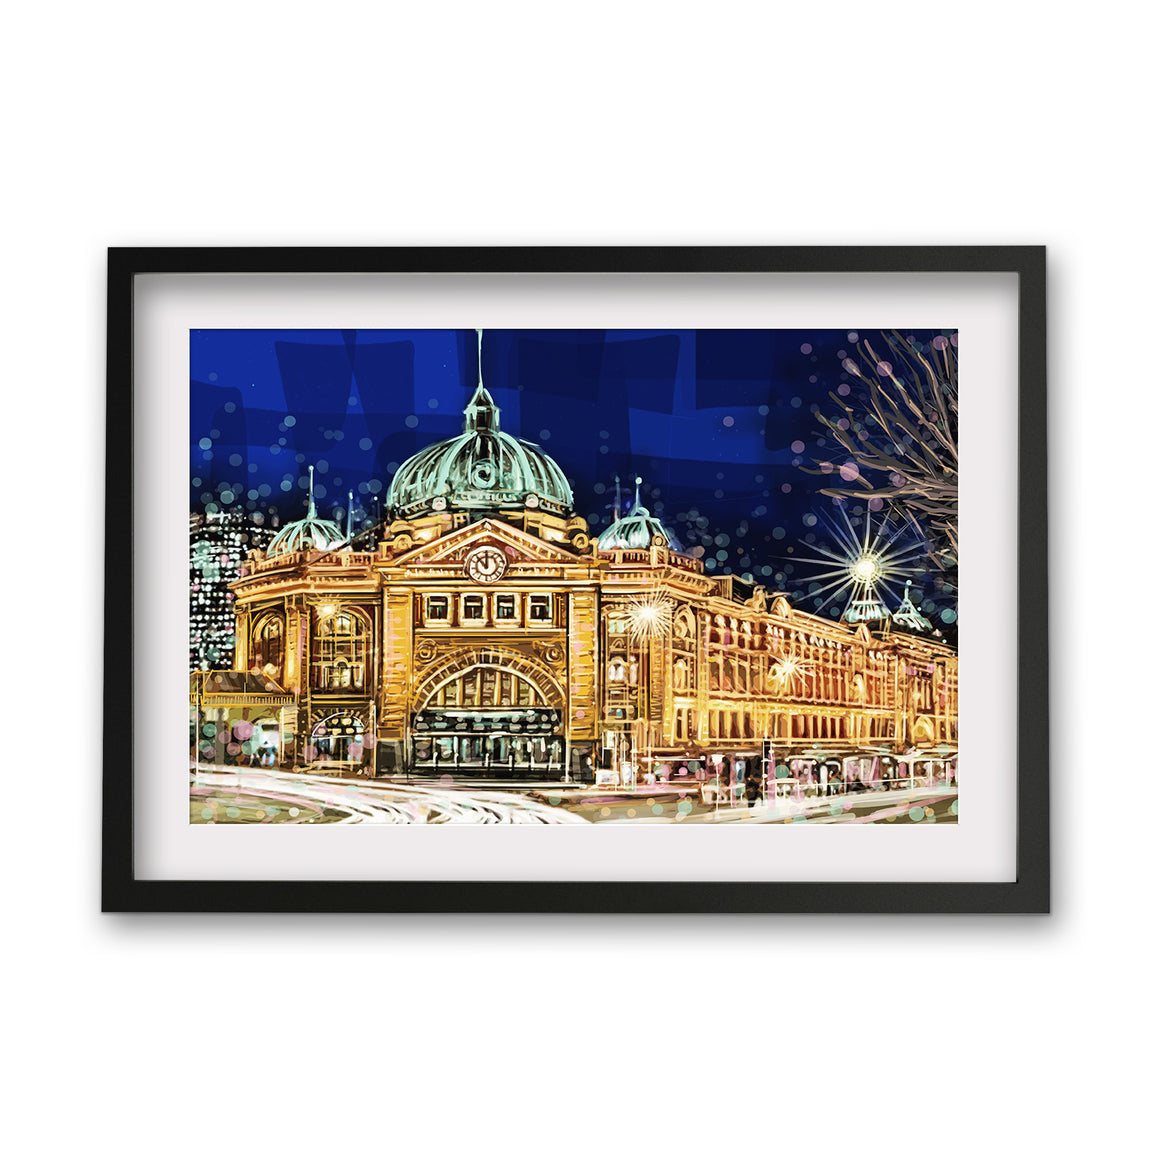 Print (Iconic) - Melbourne Flinders St Station Front night(Landscape)